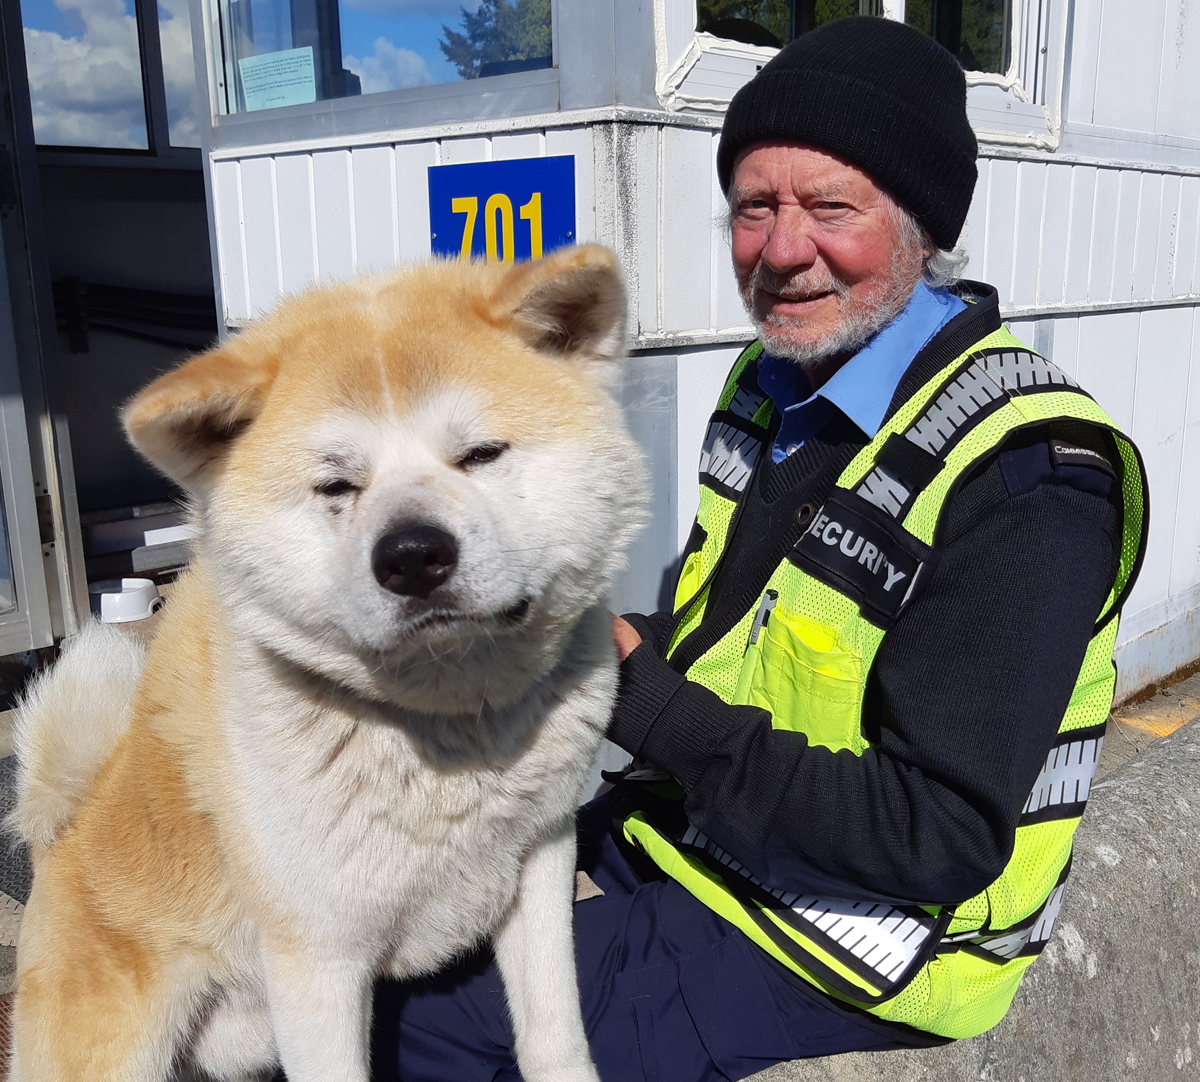 Les visages amicaux du commissionnaire Bob Cosman et de son nouveau chien Teddy sont prêts à accueillir les visiteurs à la barrière de sécurité Y-Jetty de la BFC Esquimalt. Photo : Peter Mallett/Lookout.
